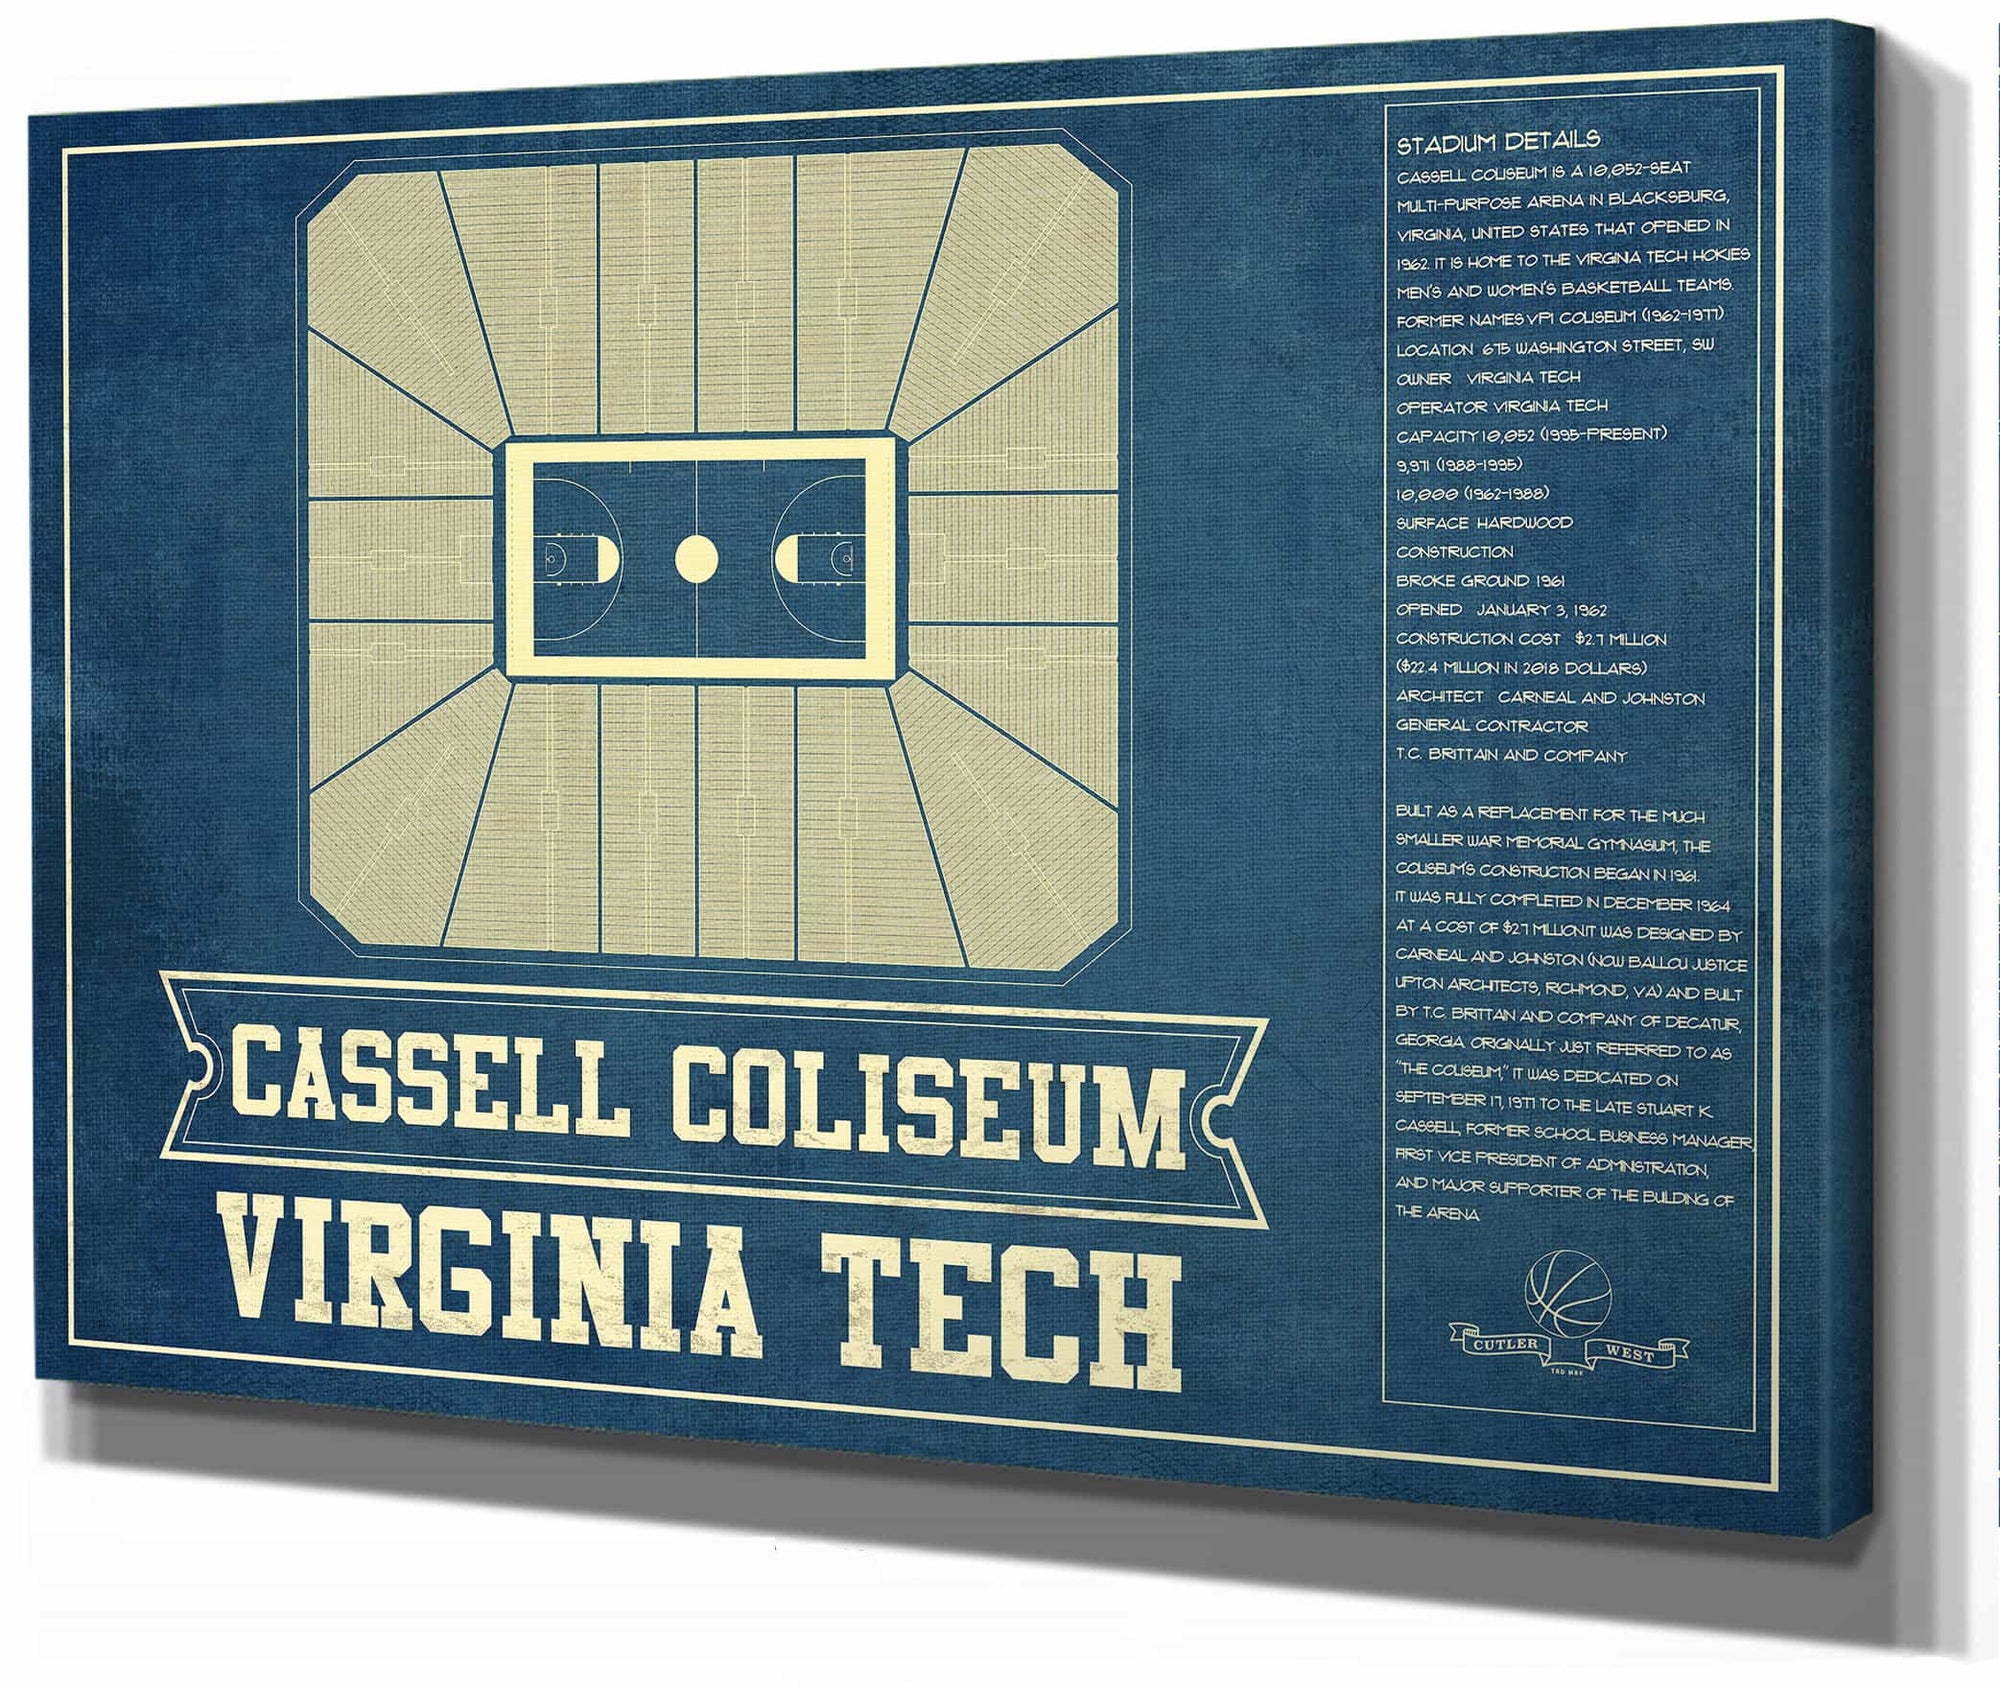 Virginia Tech Hokies - Cassell Coliseum Seating Chart - College Basketball Blueprint Art